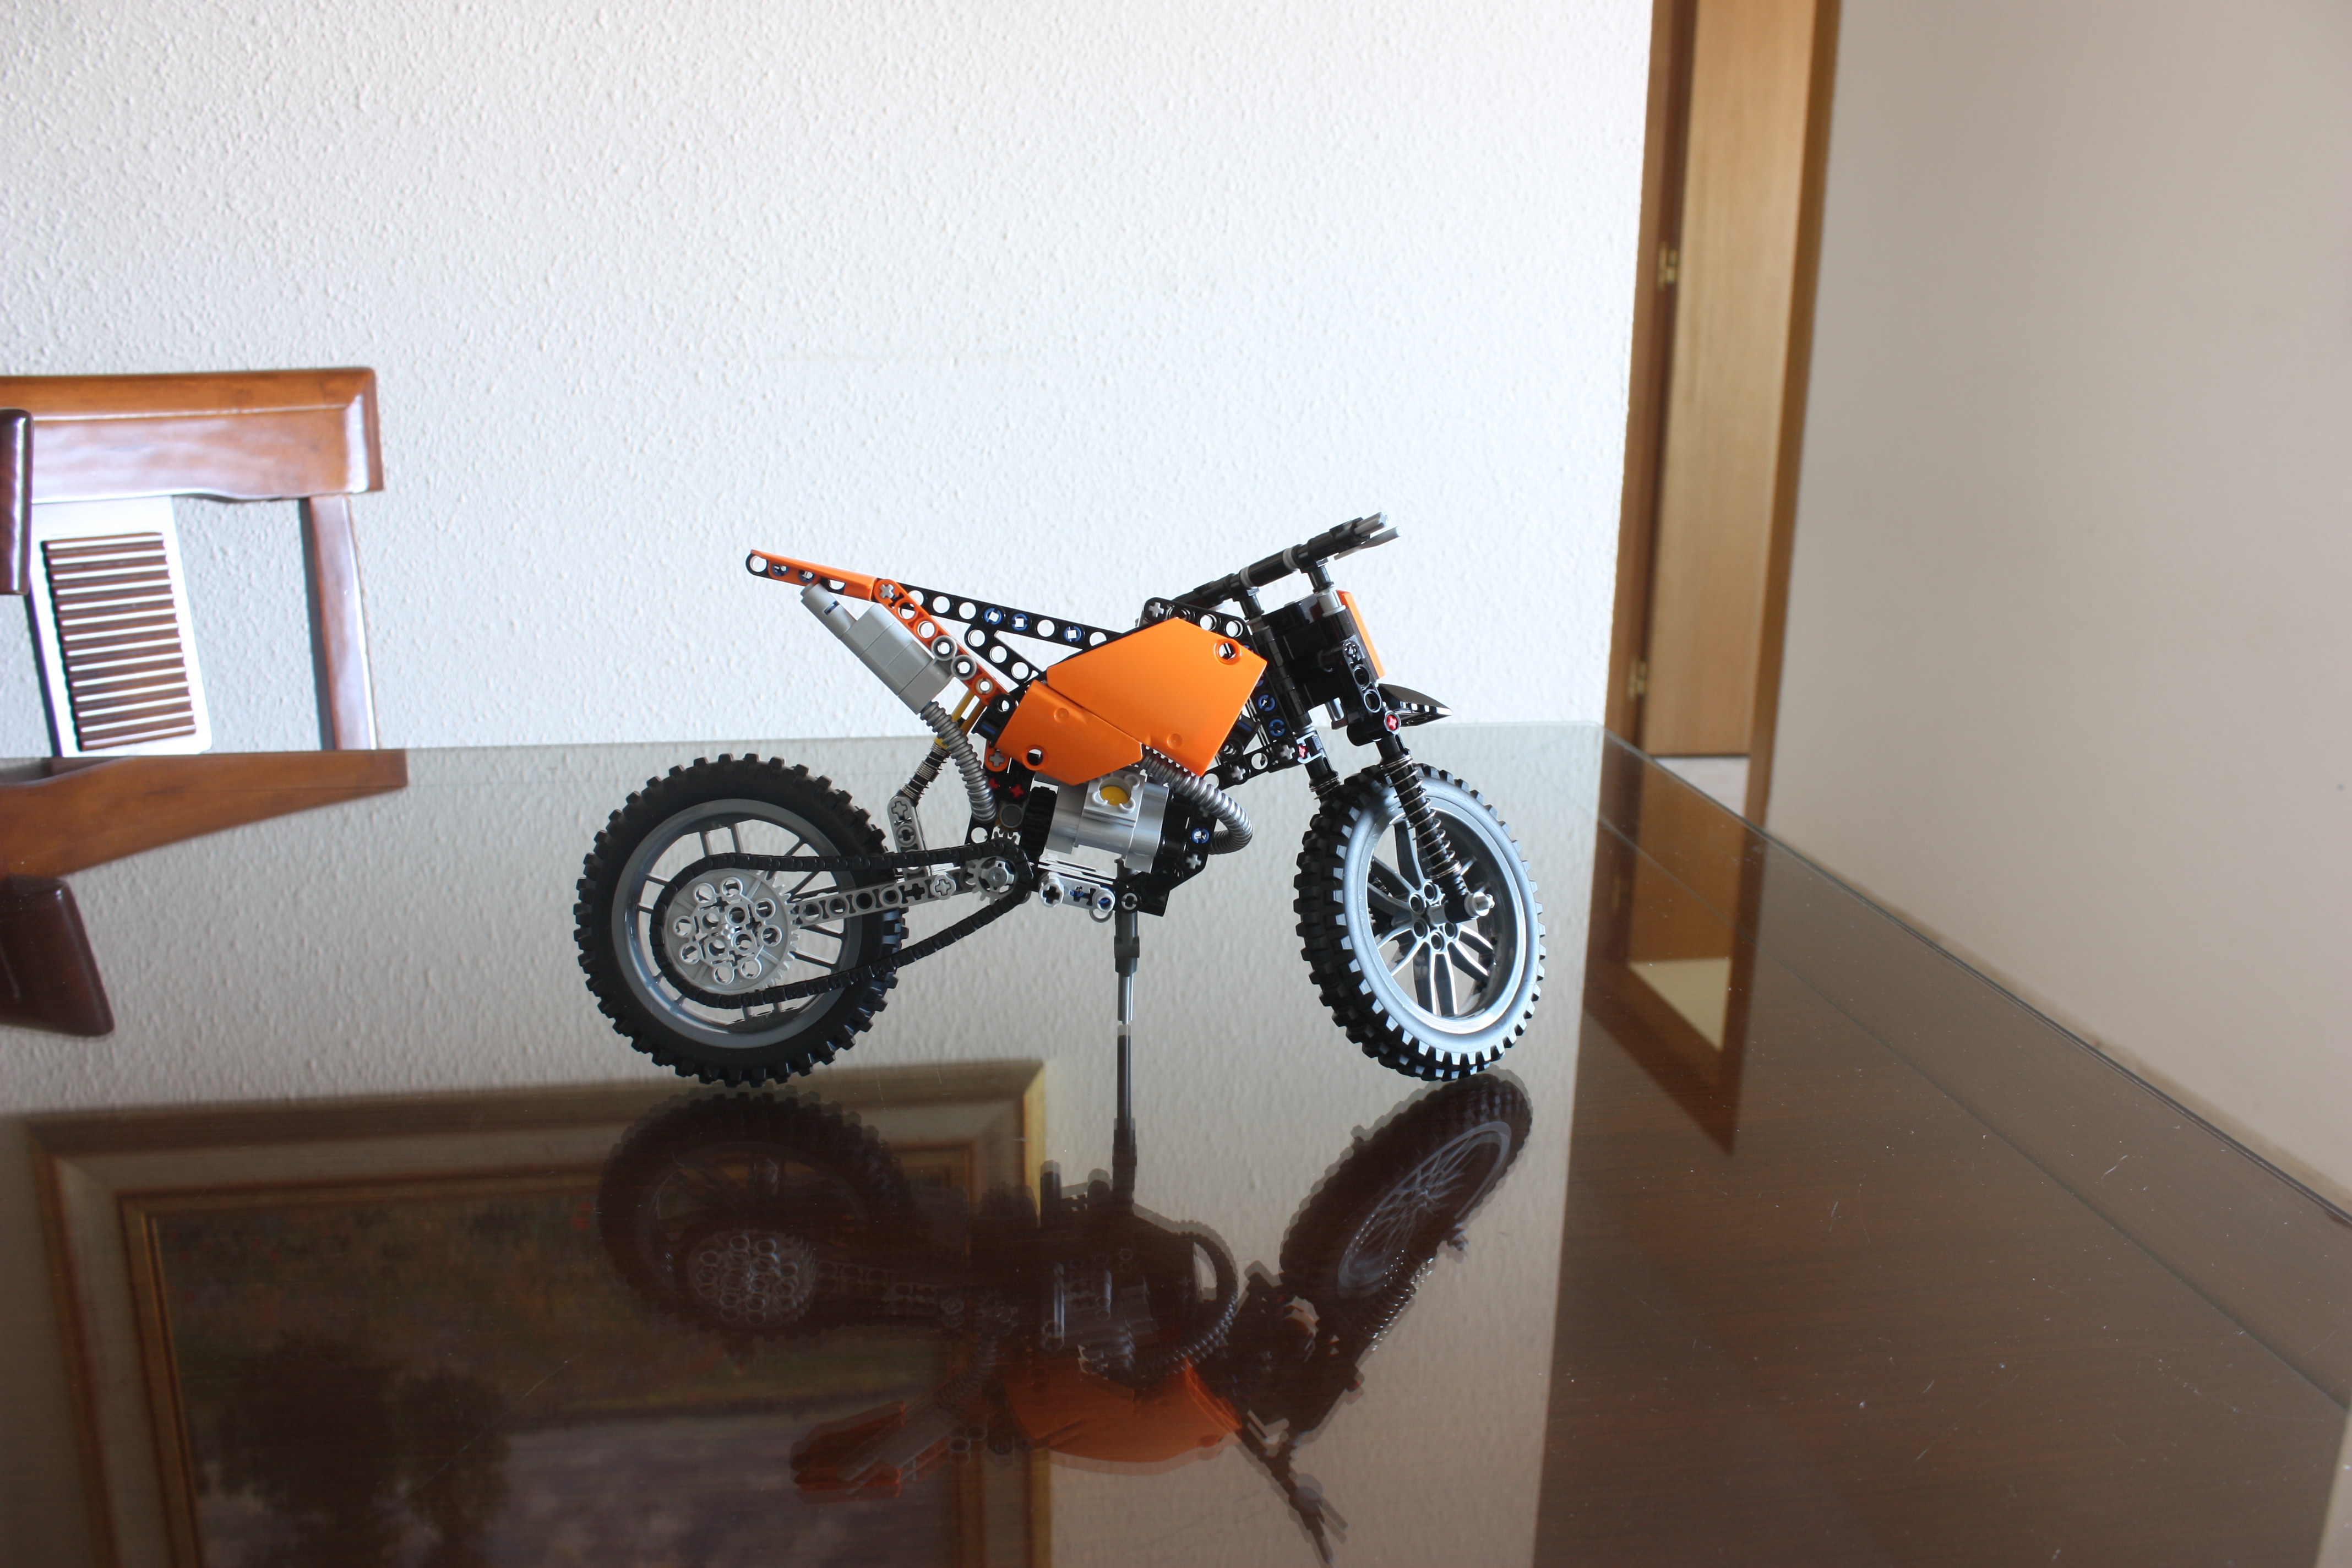 LEGO 42007 Technic Moto Cross Bike